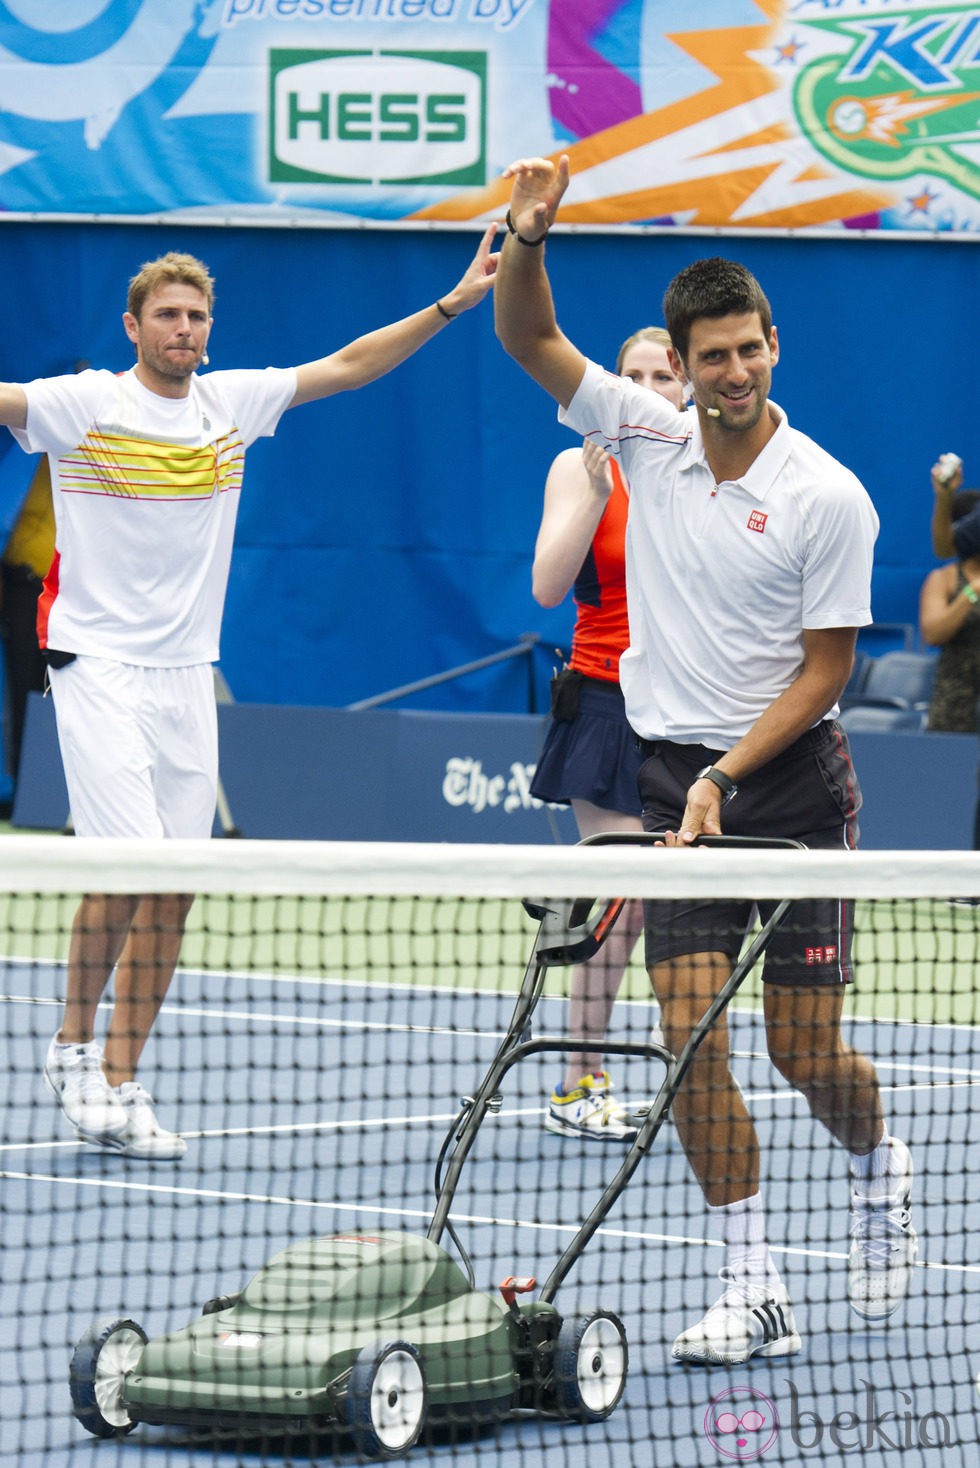 Novak Djokovic en el US Open 2012